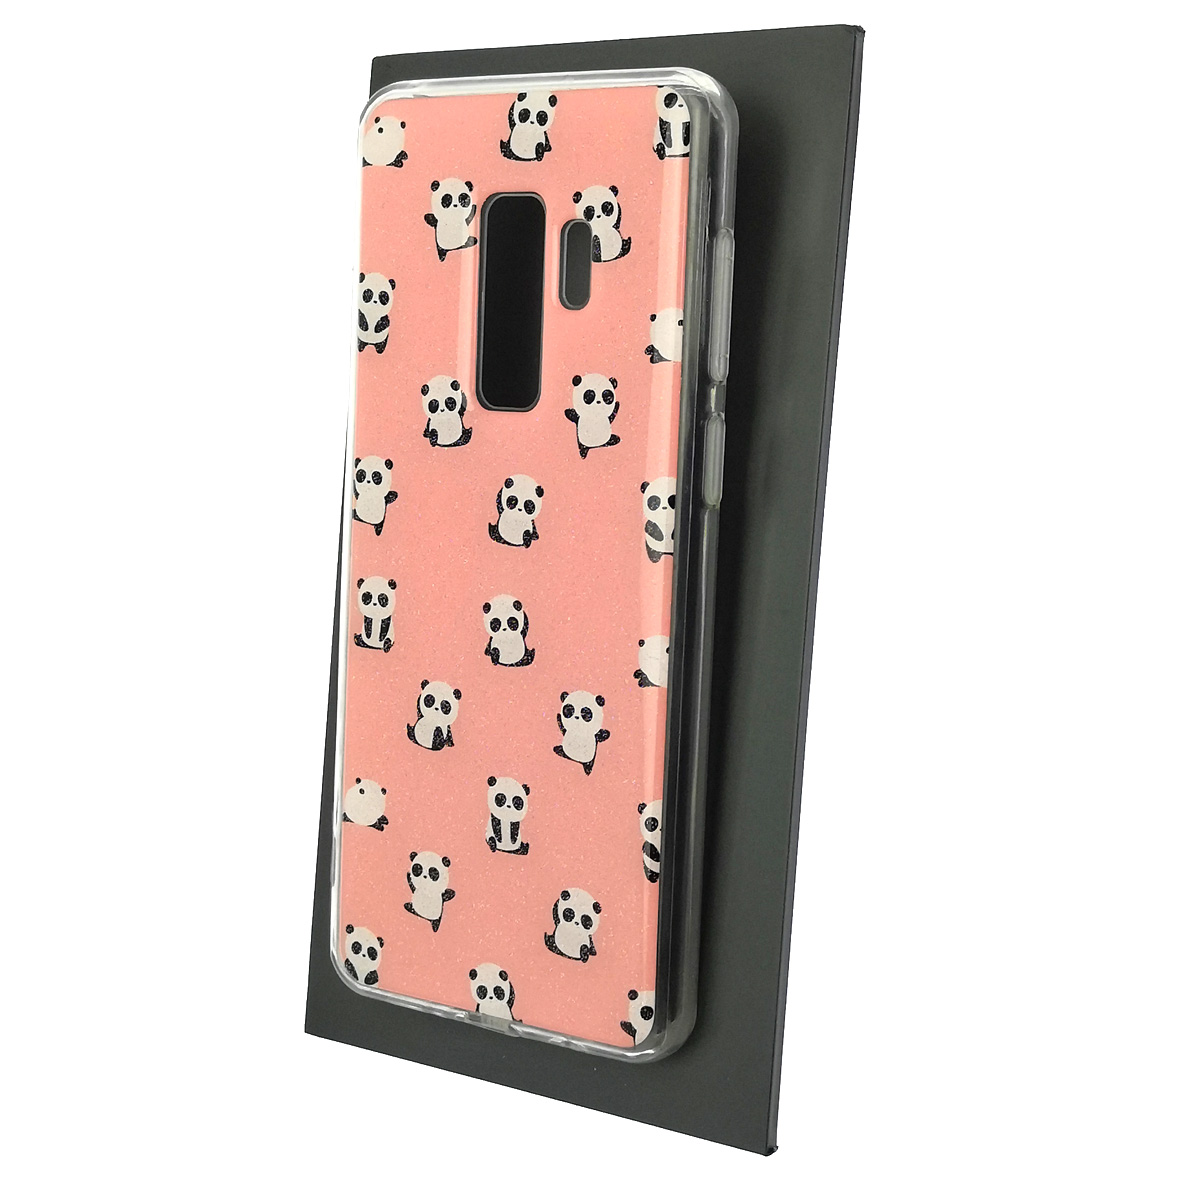 Чехол накладка для SAMSUNG Galaxy S9 Plus (SM-G965), силикон, глянцевый, блестки, рисунок Панды